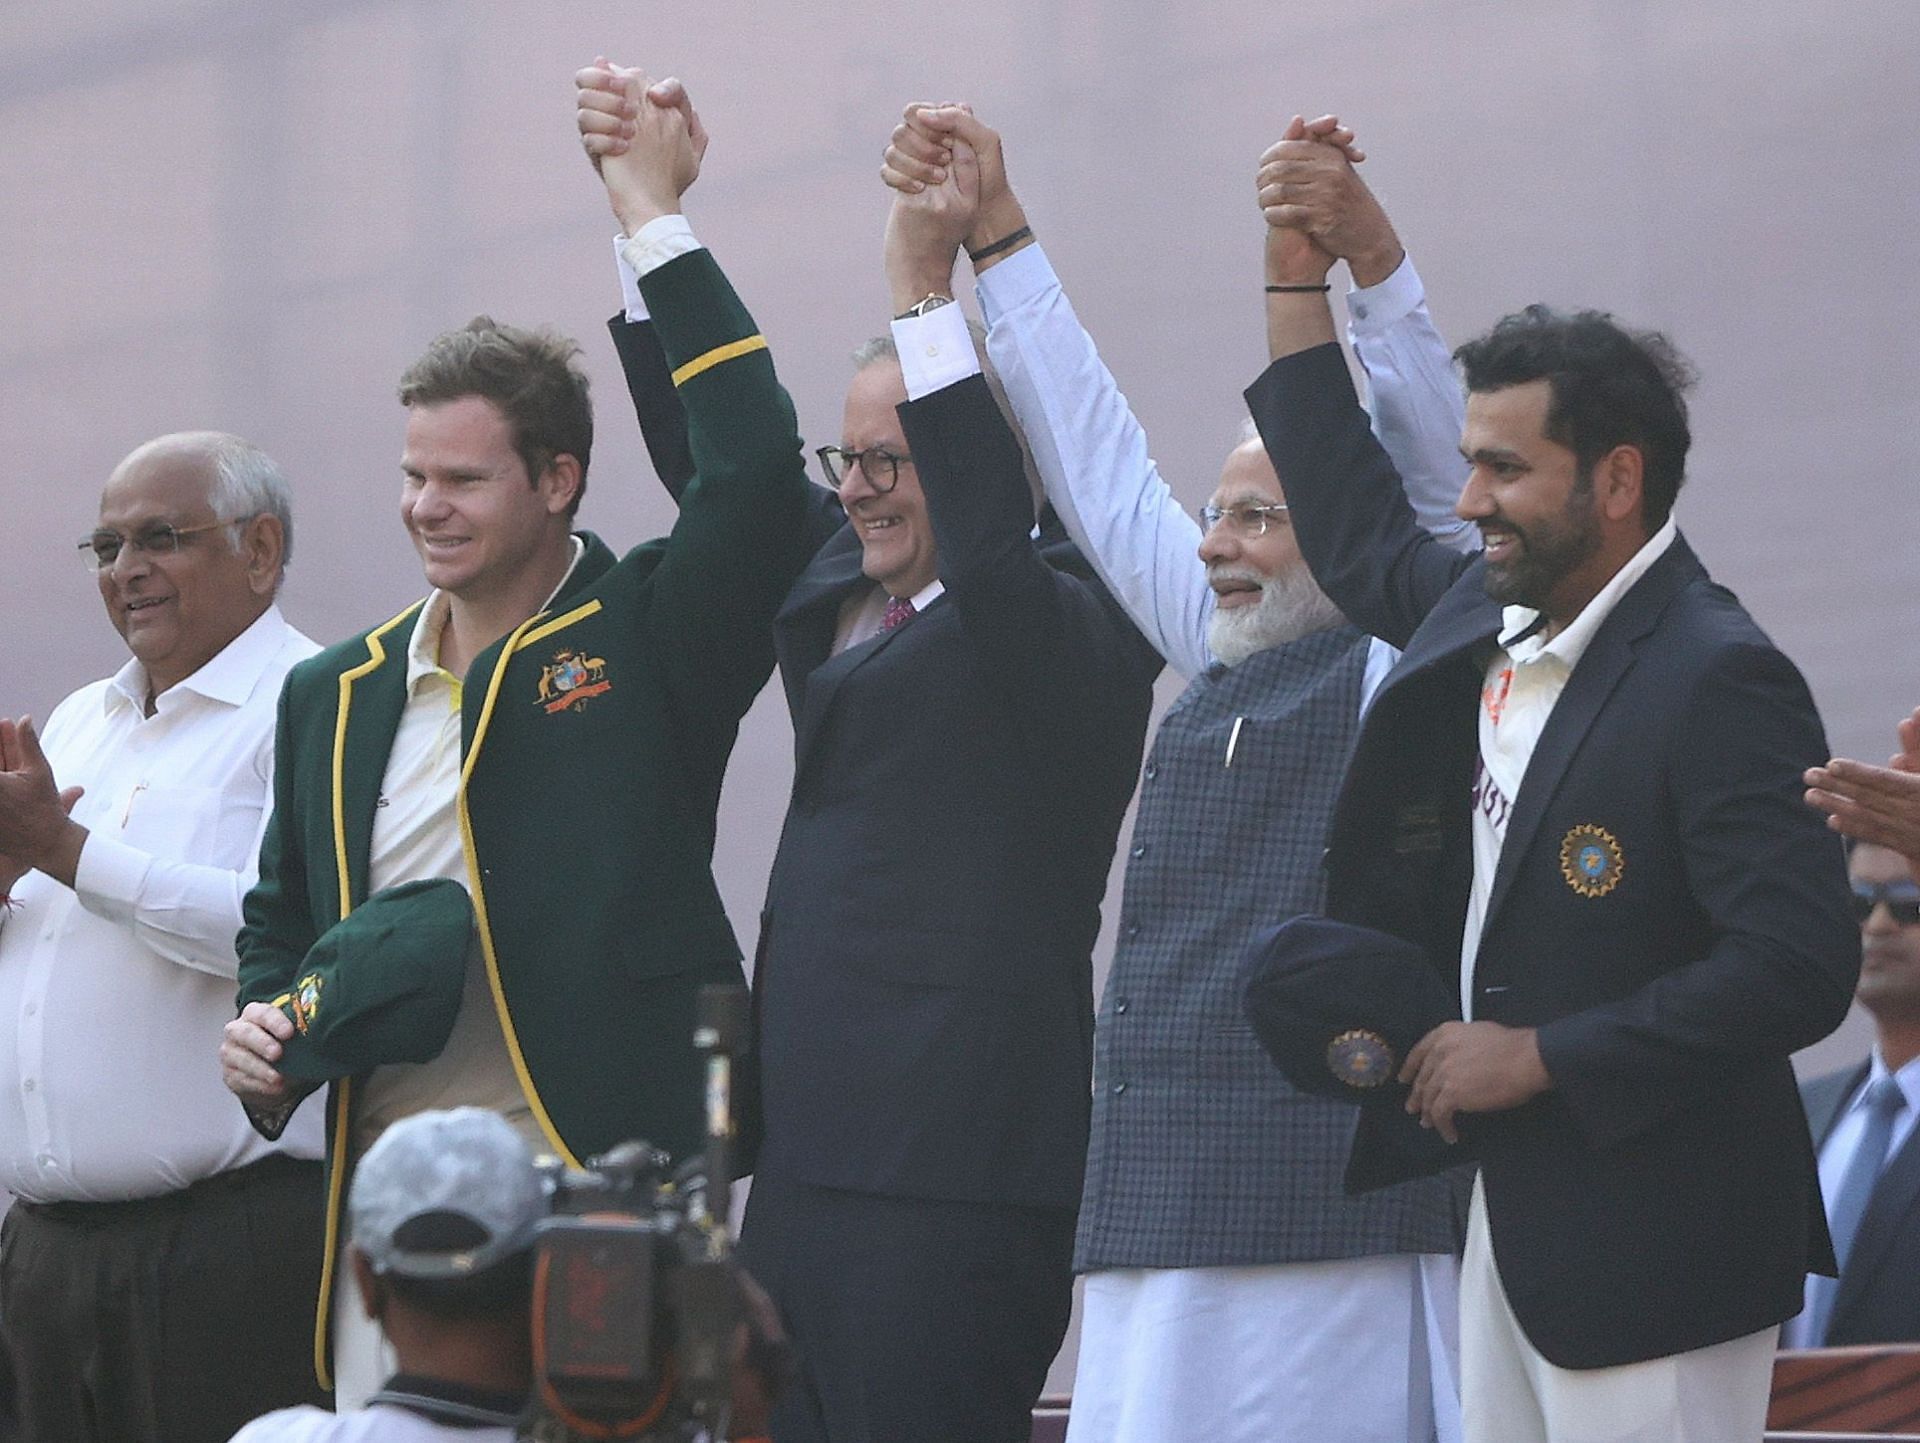 India v Australia - 4th Test: Day 1